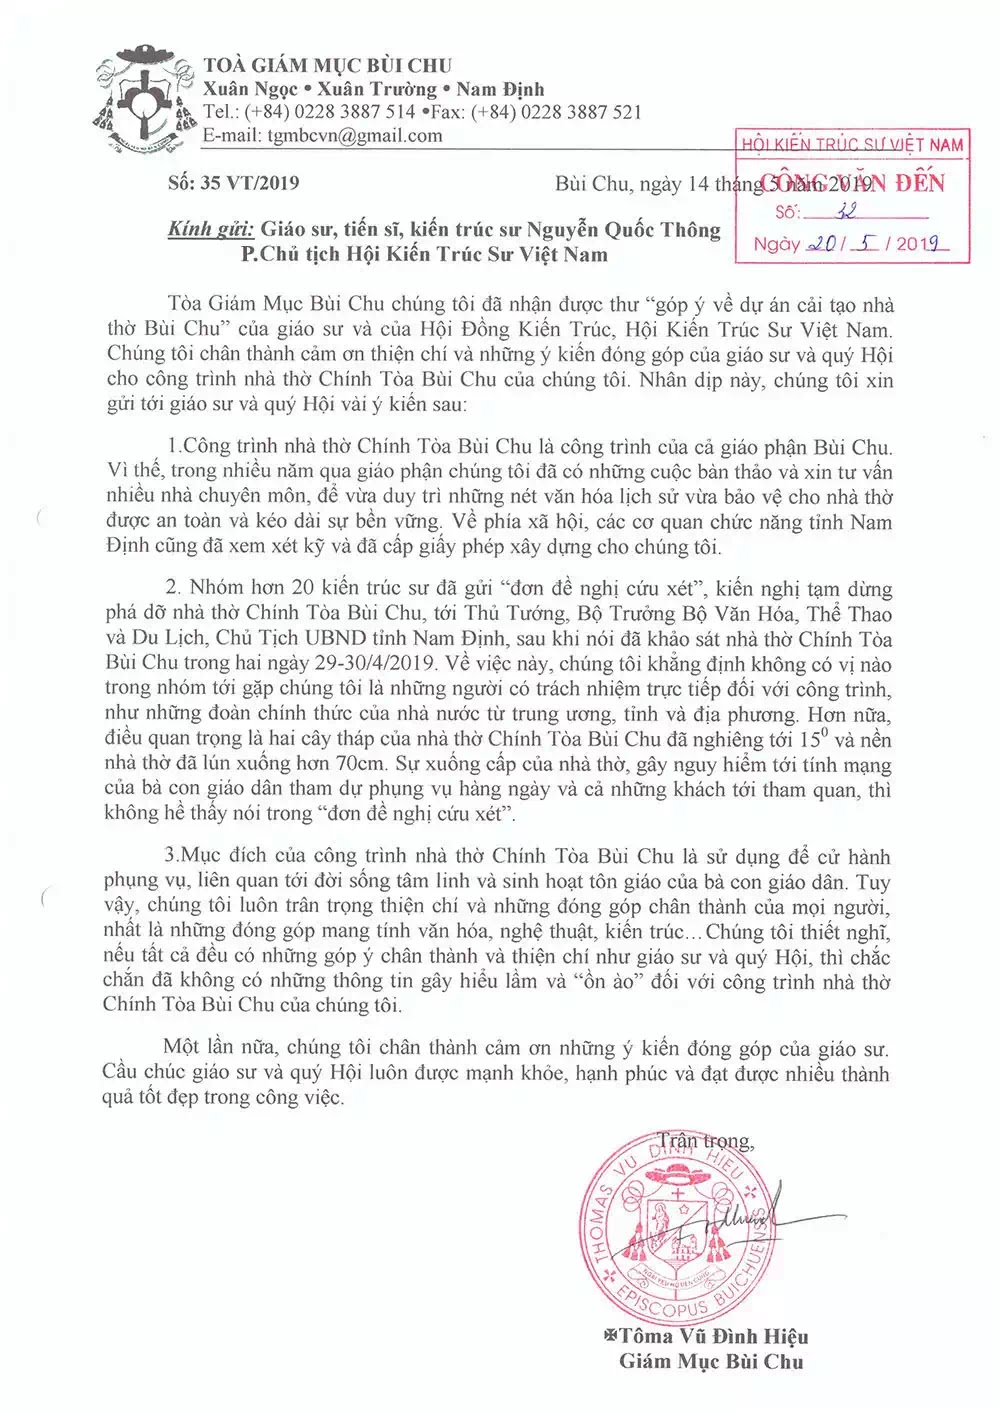 Về vụ nhà thờ chánh toà Bùi Chu: Mời tham khảo ý kiến anh Vũ Lê Hoàng, một giáo dân Bùi Chu